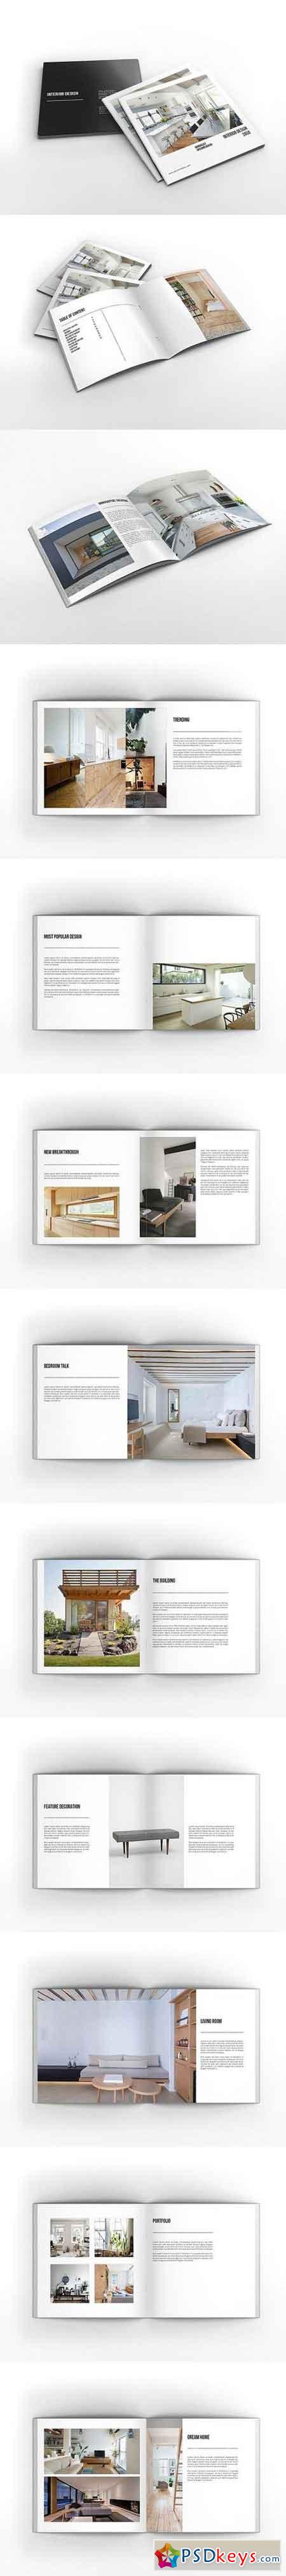 Interior Design Square Brochure 1685152